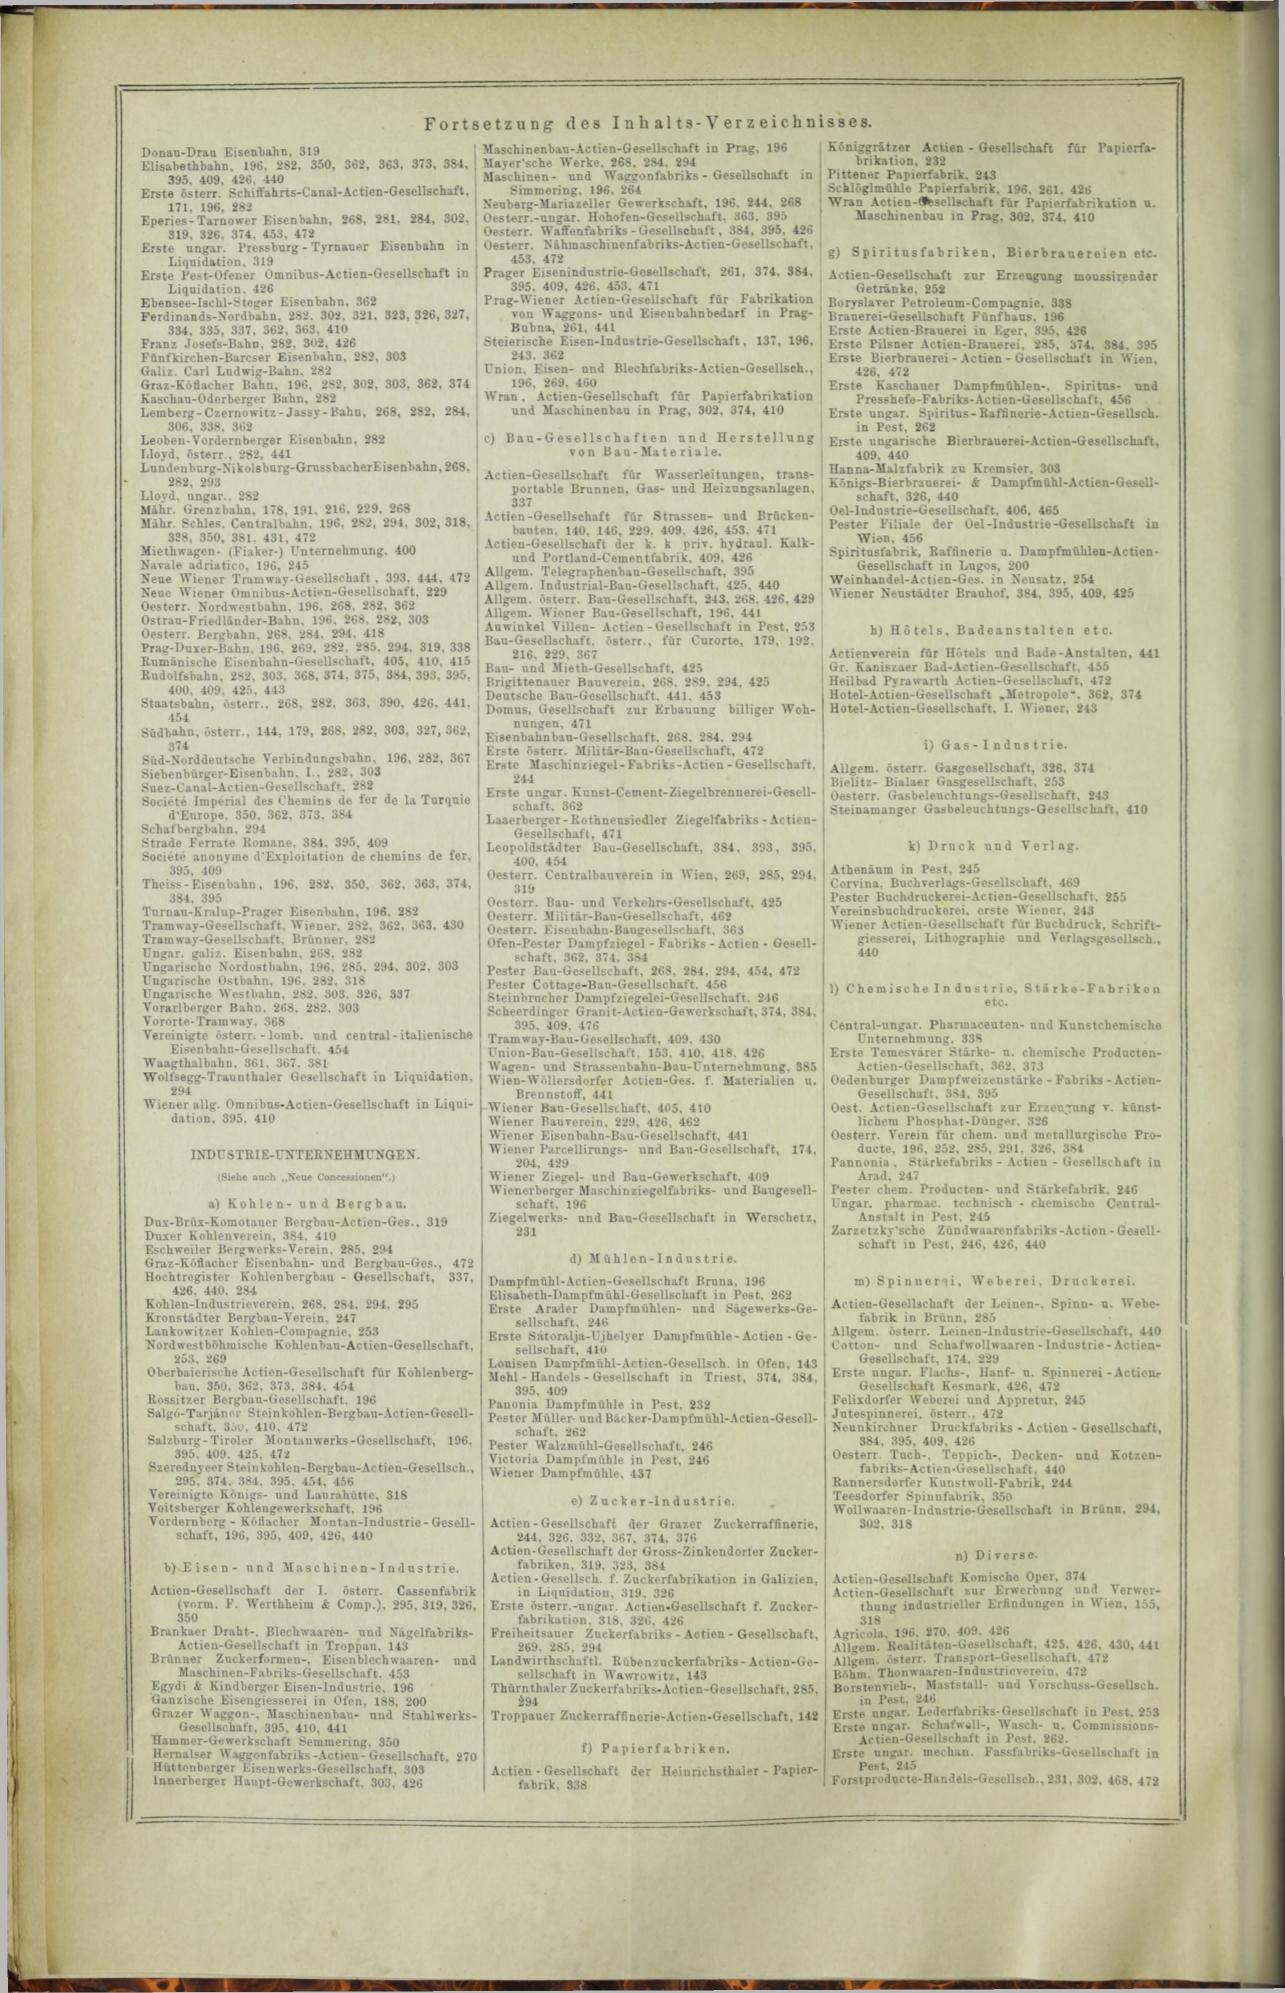 Der Tresor 03.12.1872 - Page 20